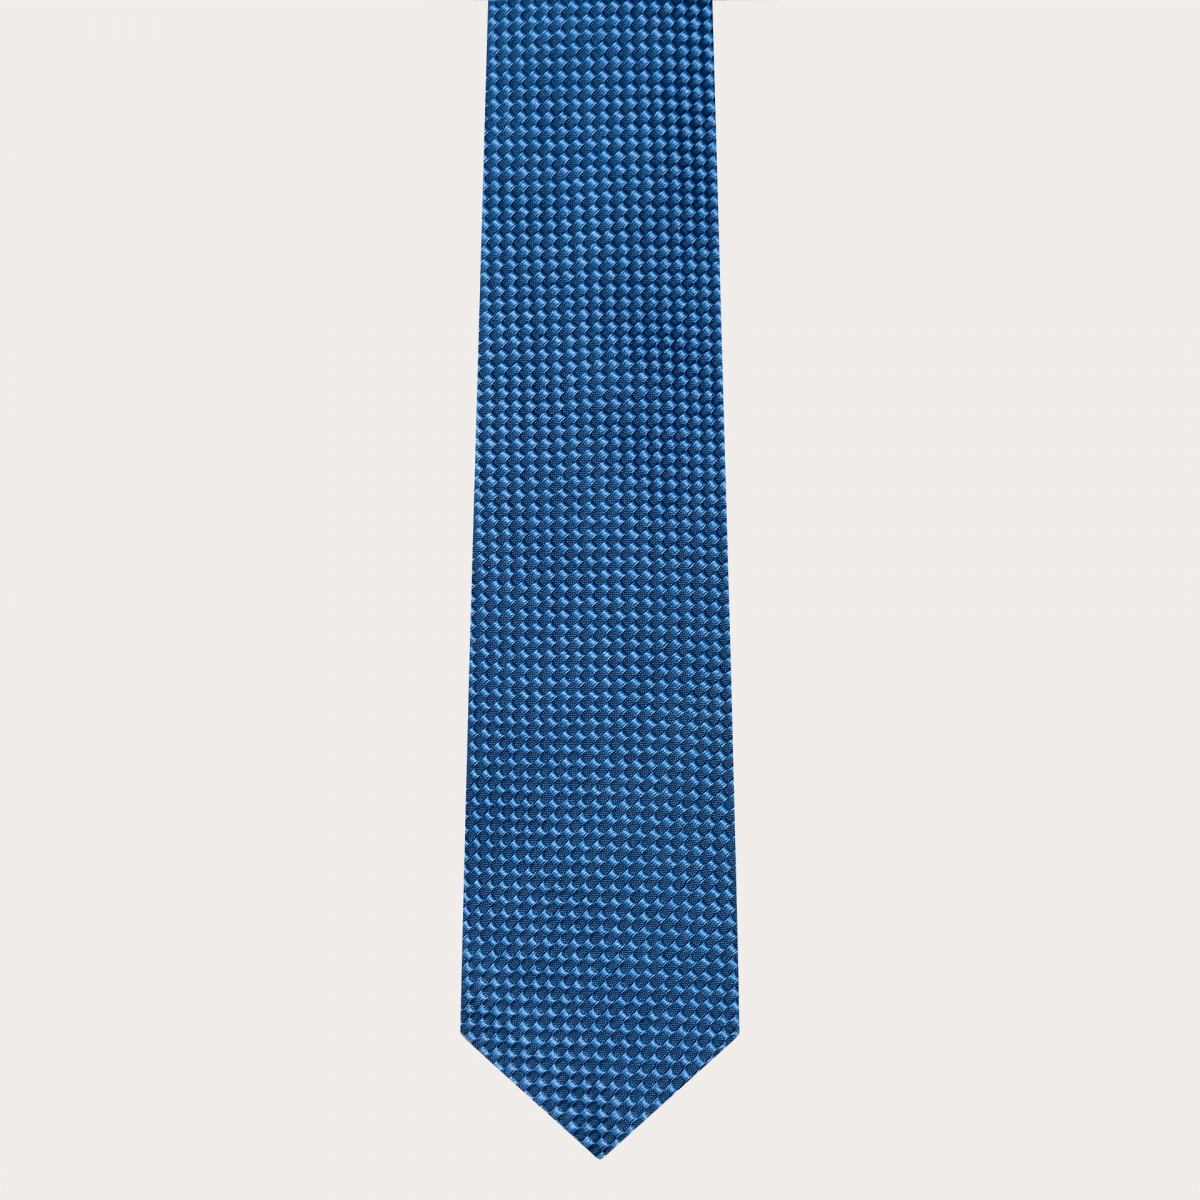 Cravate en soie jacquard pour costume, bleu clair avec motif en relief